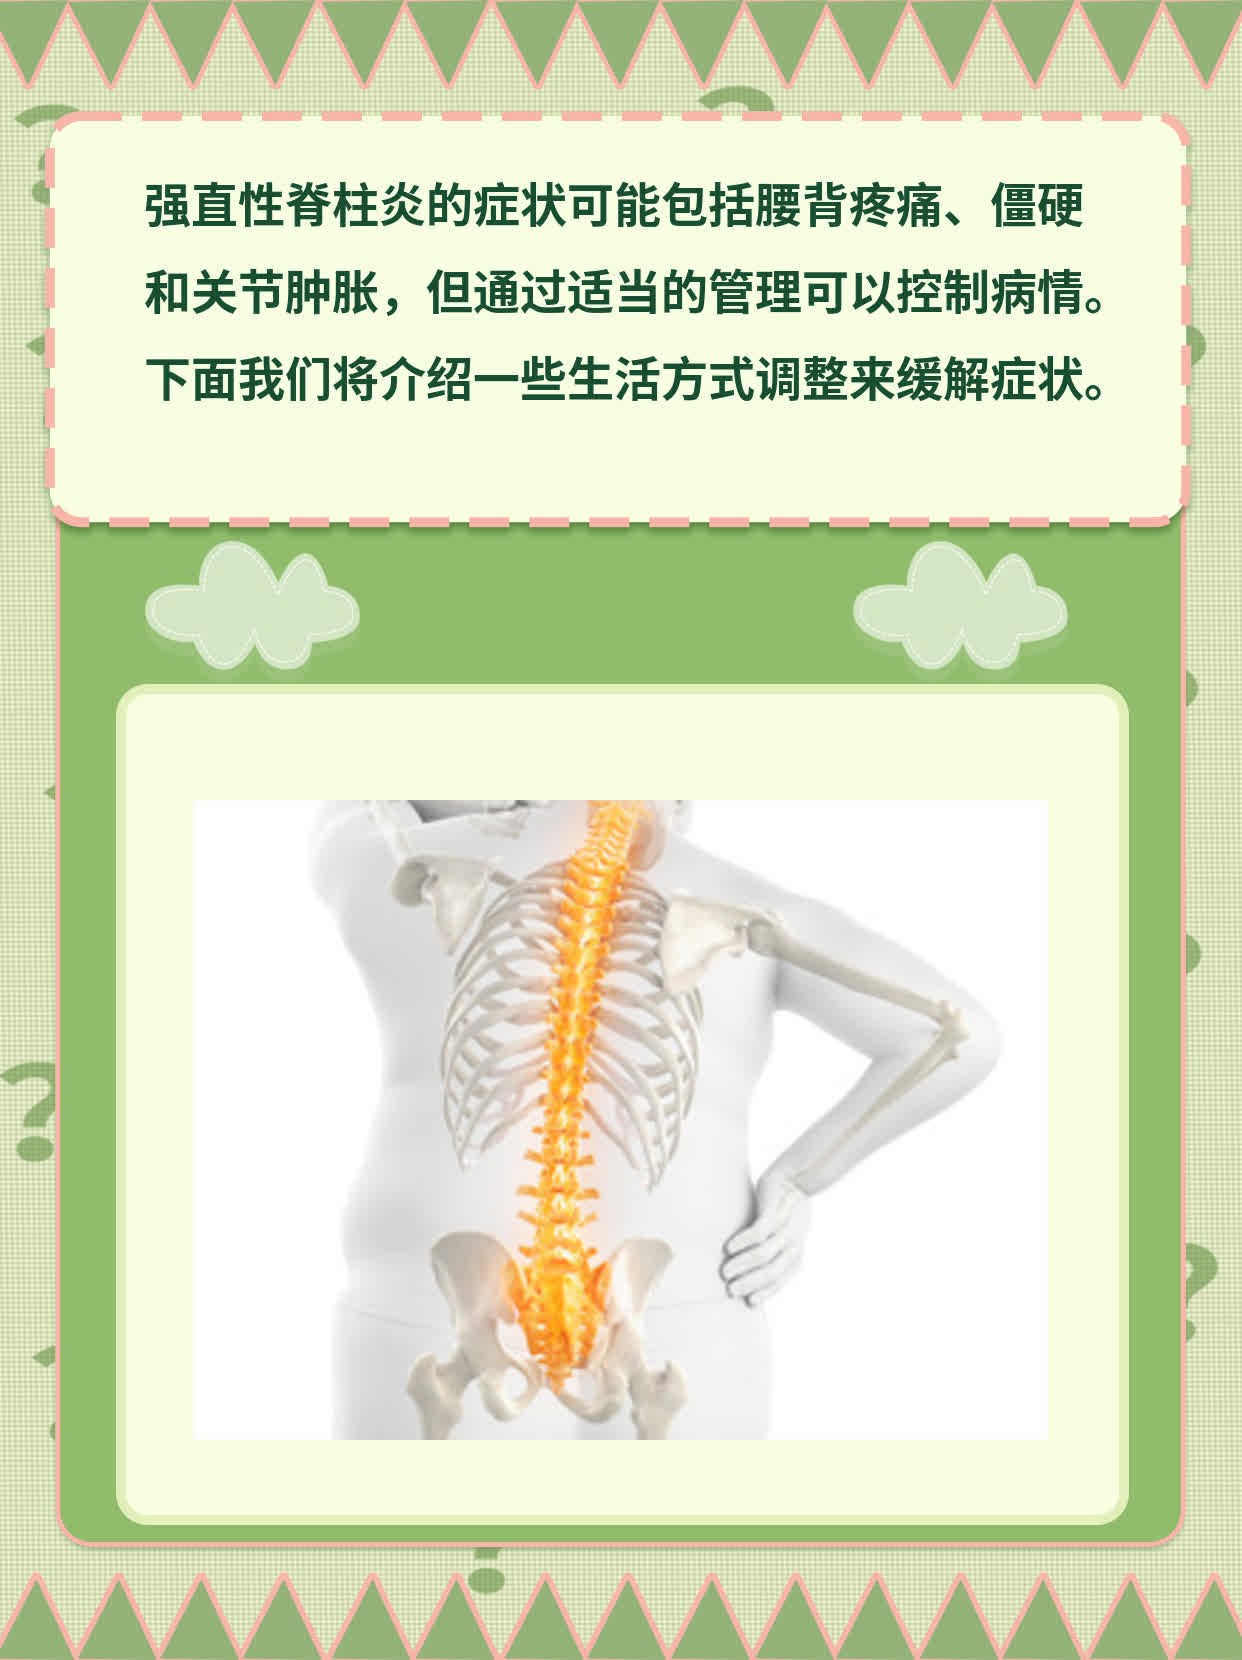 「强直性脊柱炎」的症状表现，你知道吗？